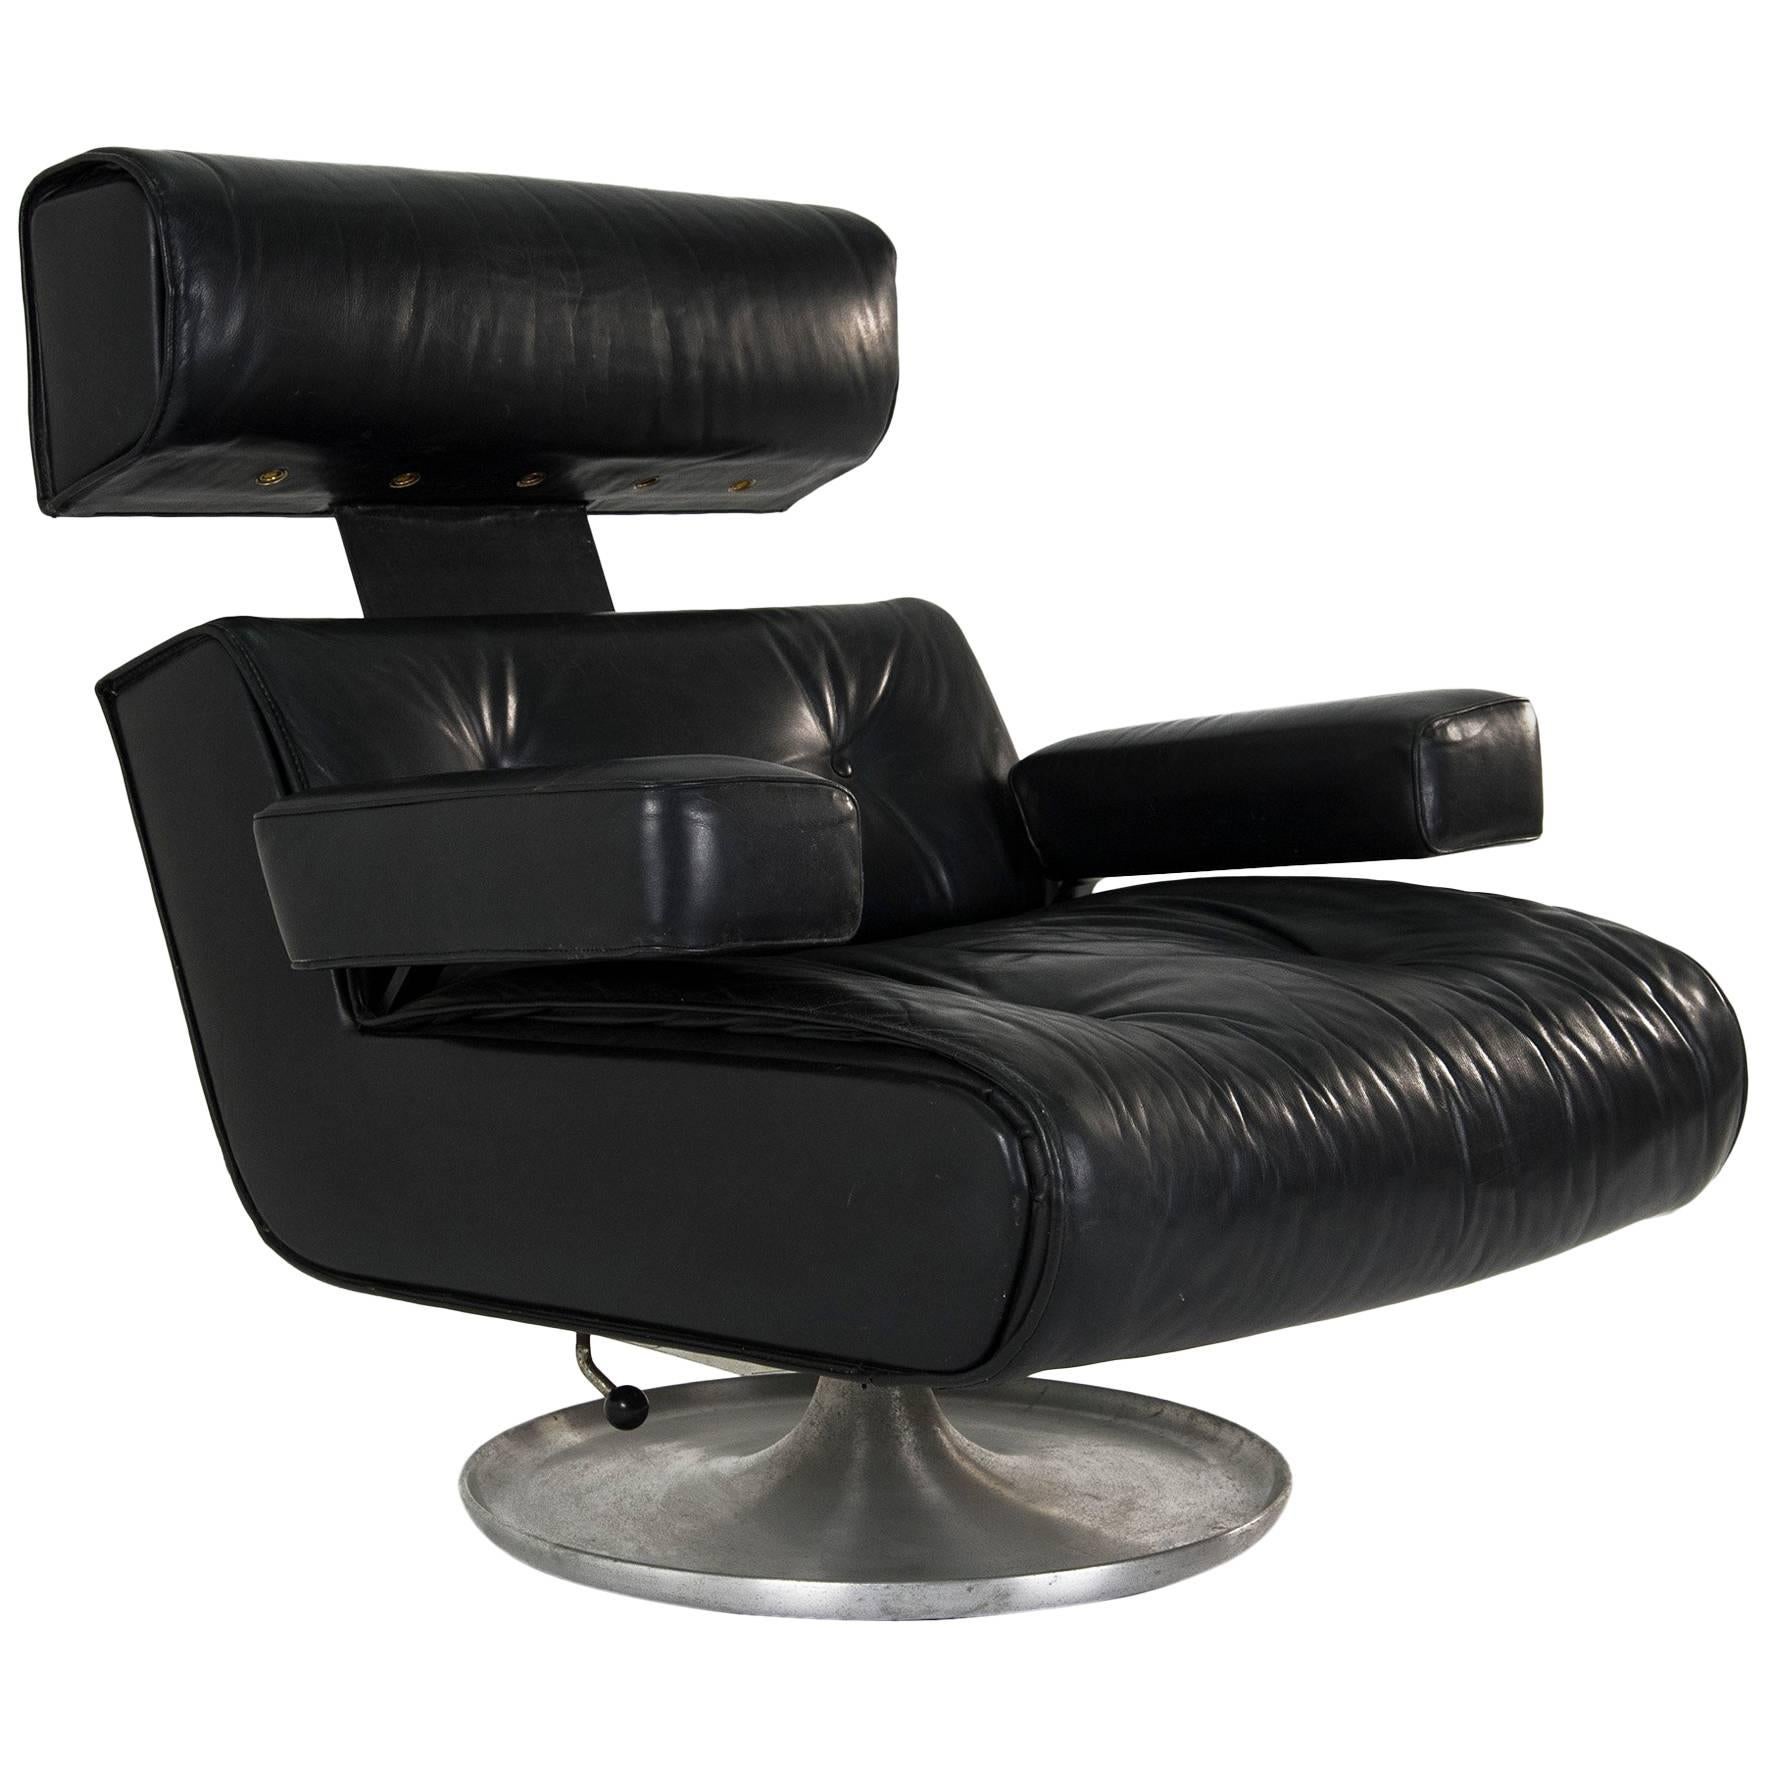 Osvaldo Borsani "P103" Leather Office Chair, Tecno, 1964